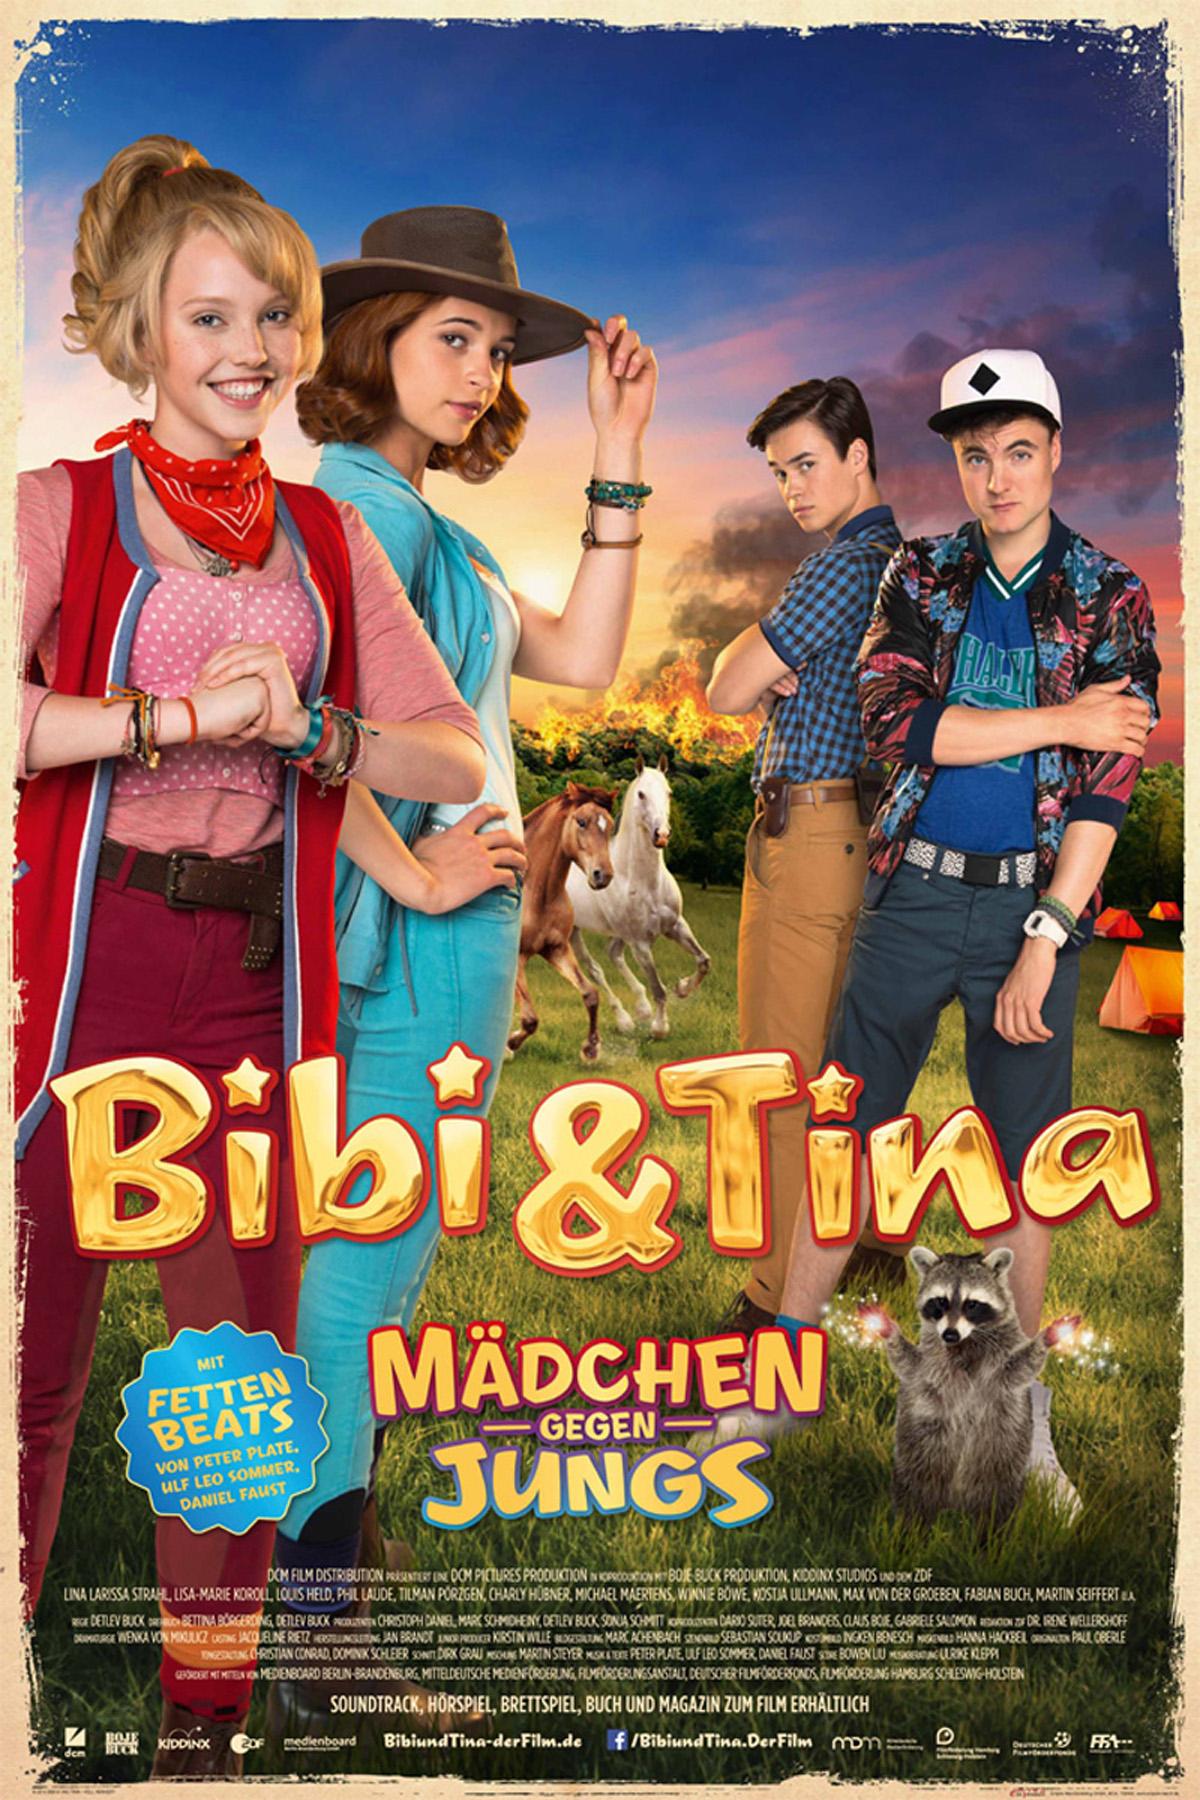 Bibi & gegen Jungs - Mädchen Tina